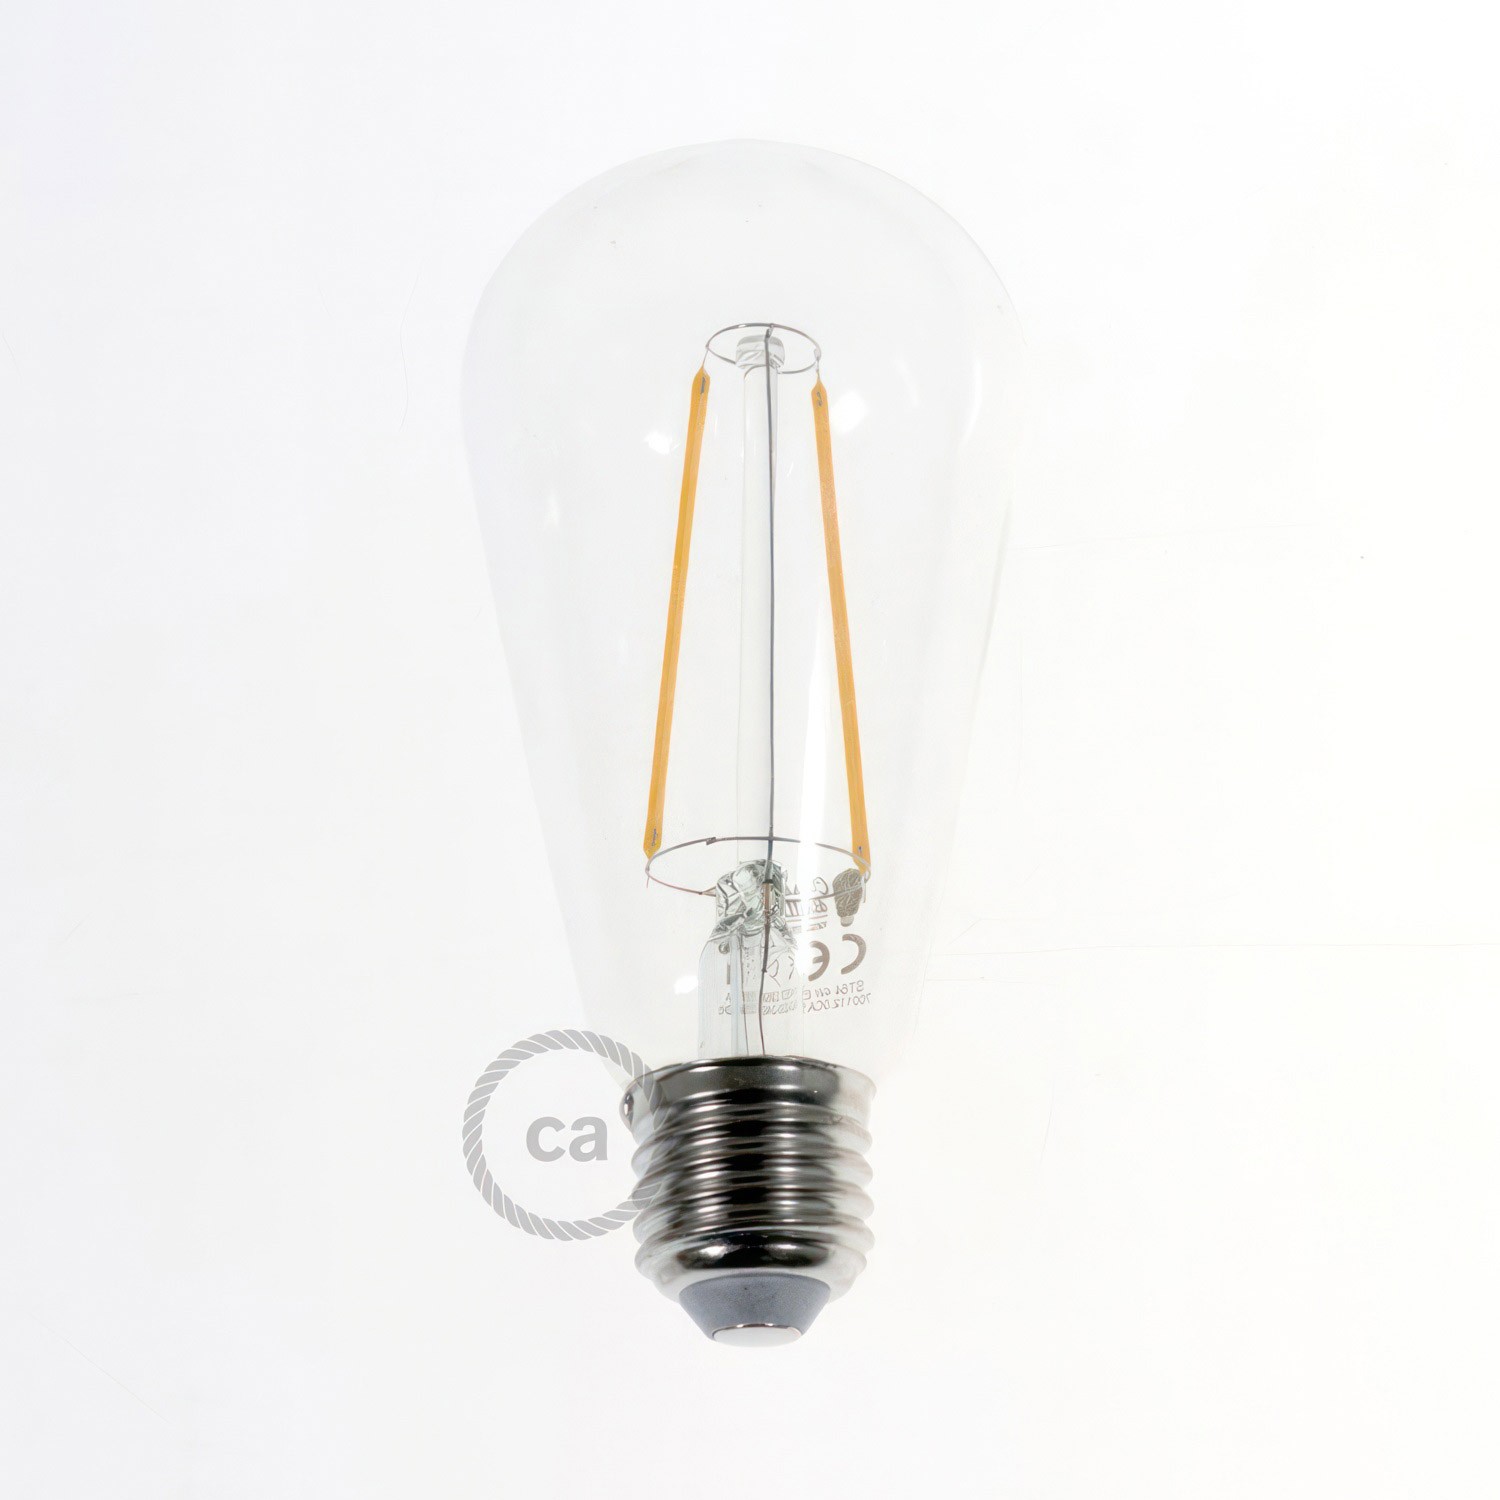 Viseća svjetiljka s 6 ispusta, pravokutnom XXL Rose-One rozetom 675 mm, tekstilnim kabelom, komponente u bojama metala.